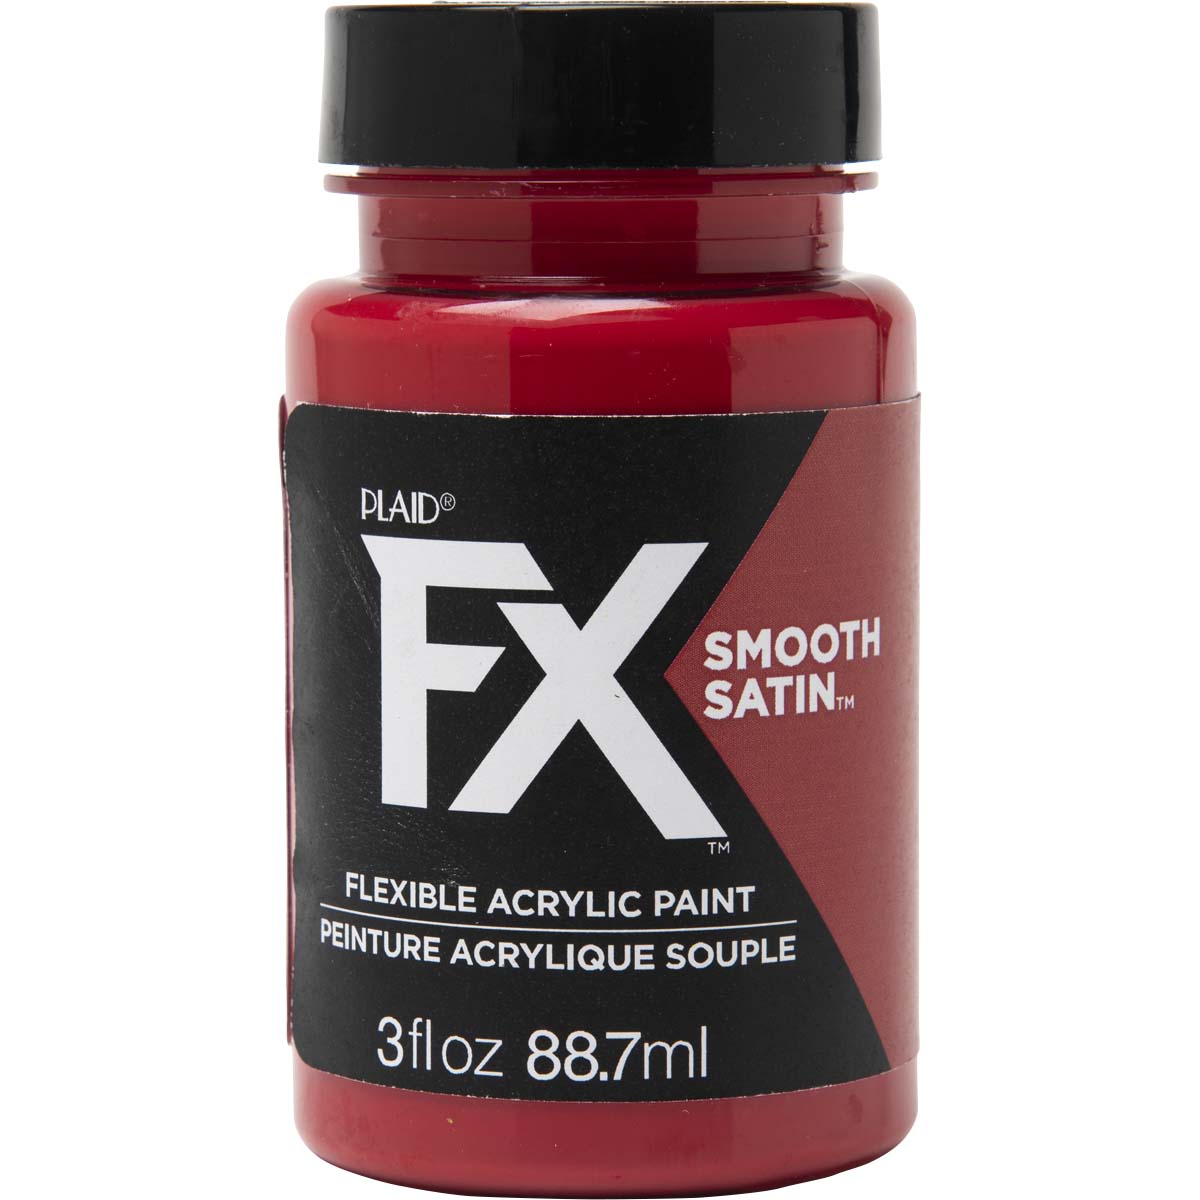 PlaidFX Smooth Satin Flexible Acrylic Paint - Crimson Crusade, 3 oz. - 36841